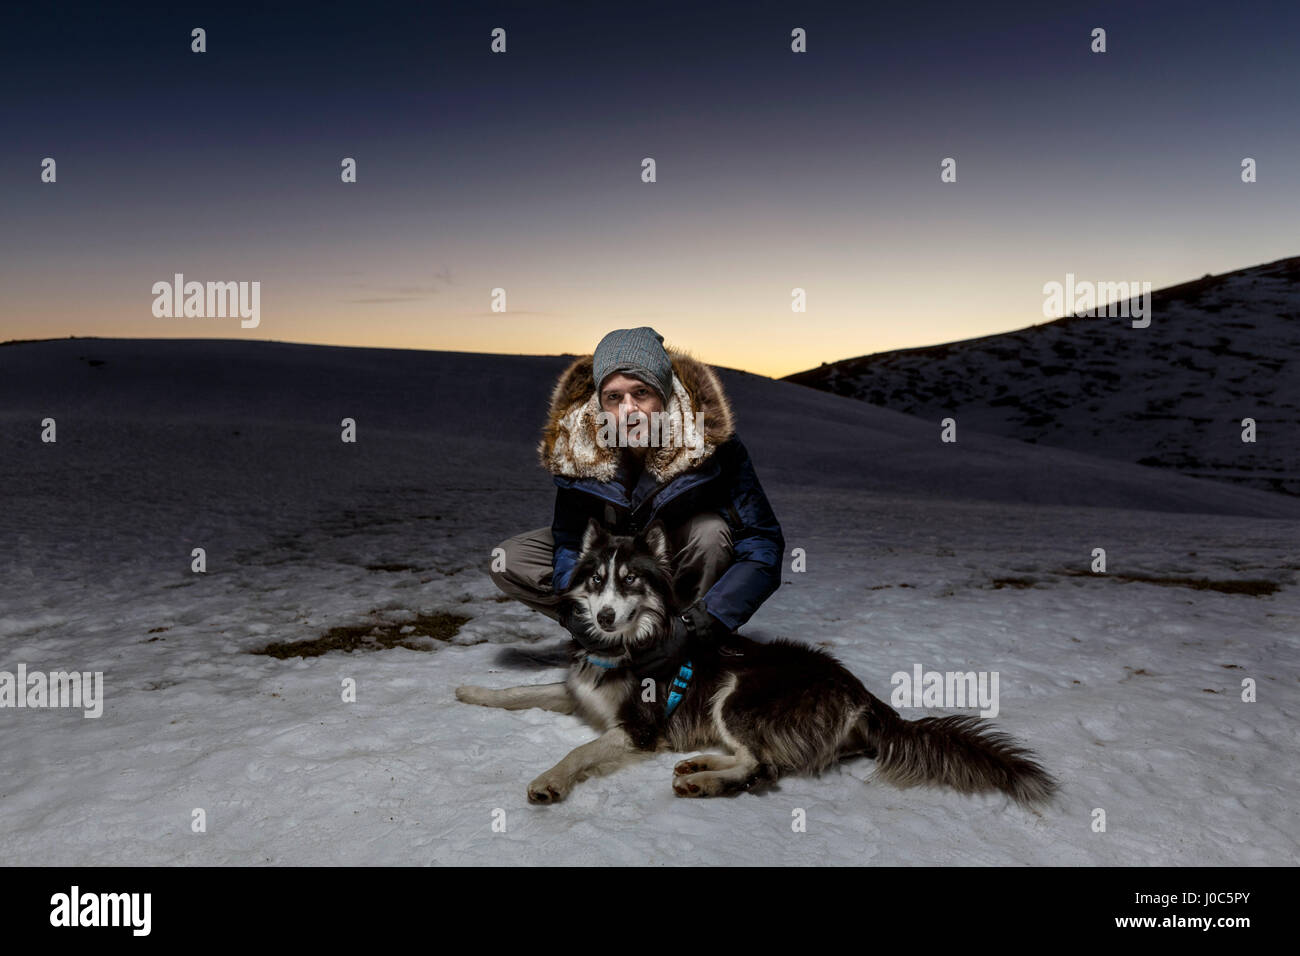 Ritratto di uomo maturo accovacciato con il cane nella neve durante la notte Foto Stock